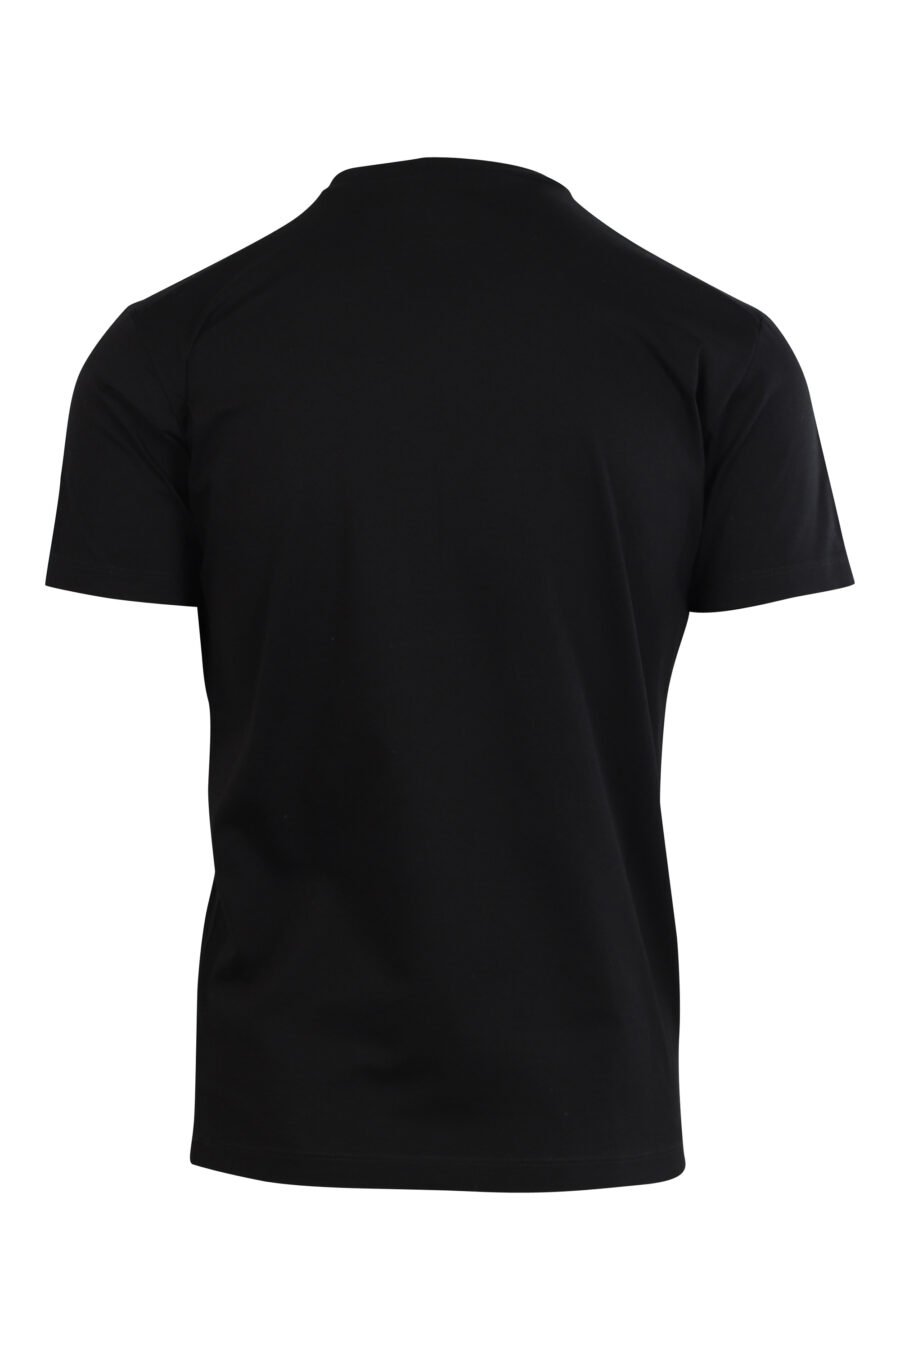 T-shirt preta com minilogo centrado - 8058049841681 2